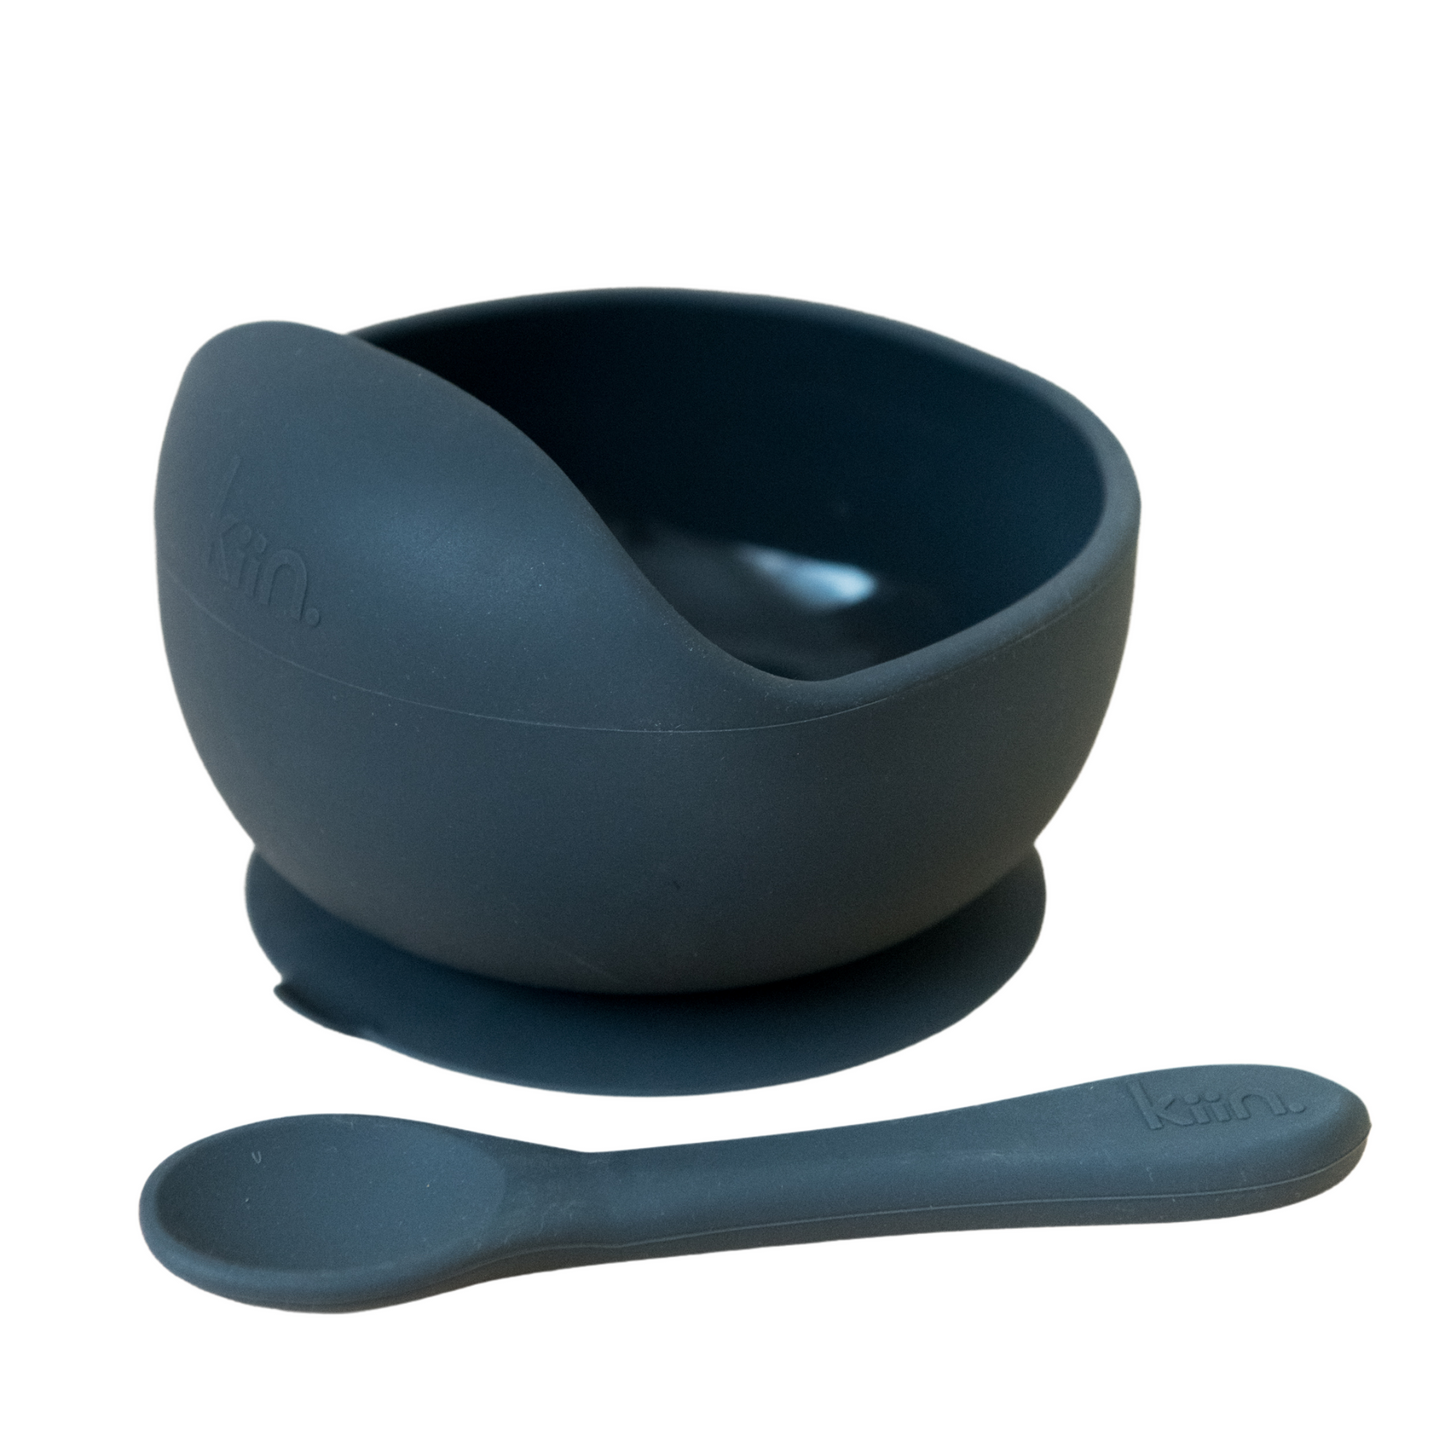 Kiin Silicone Bowl + Spoon Set